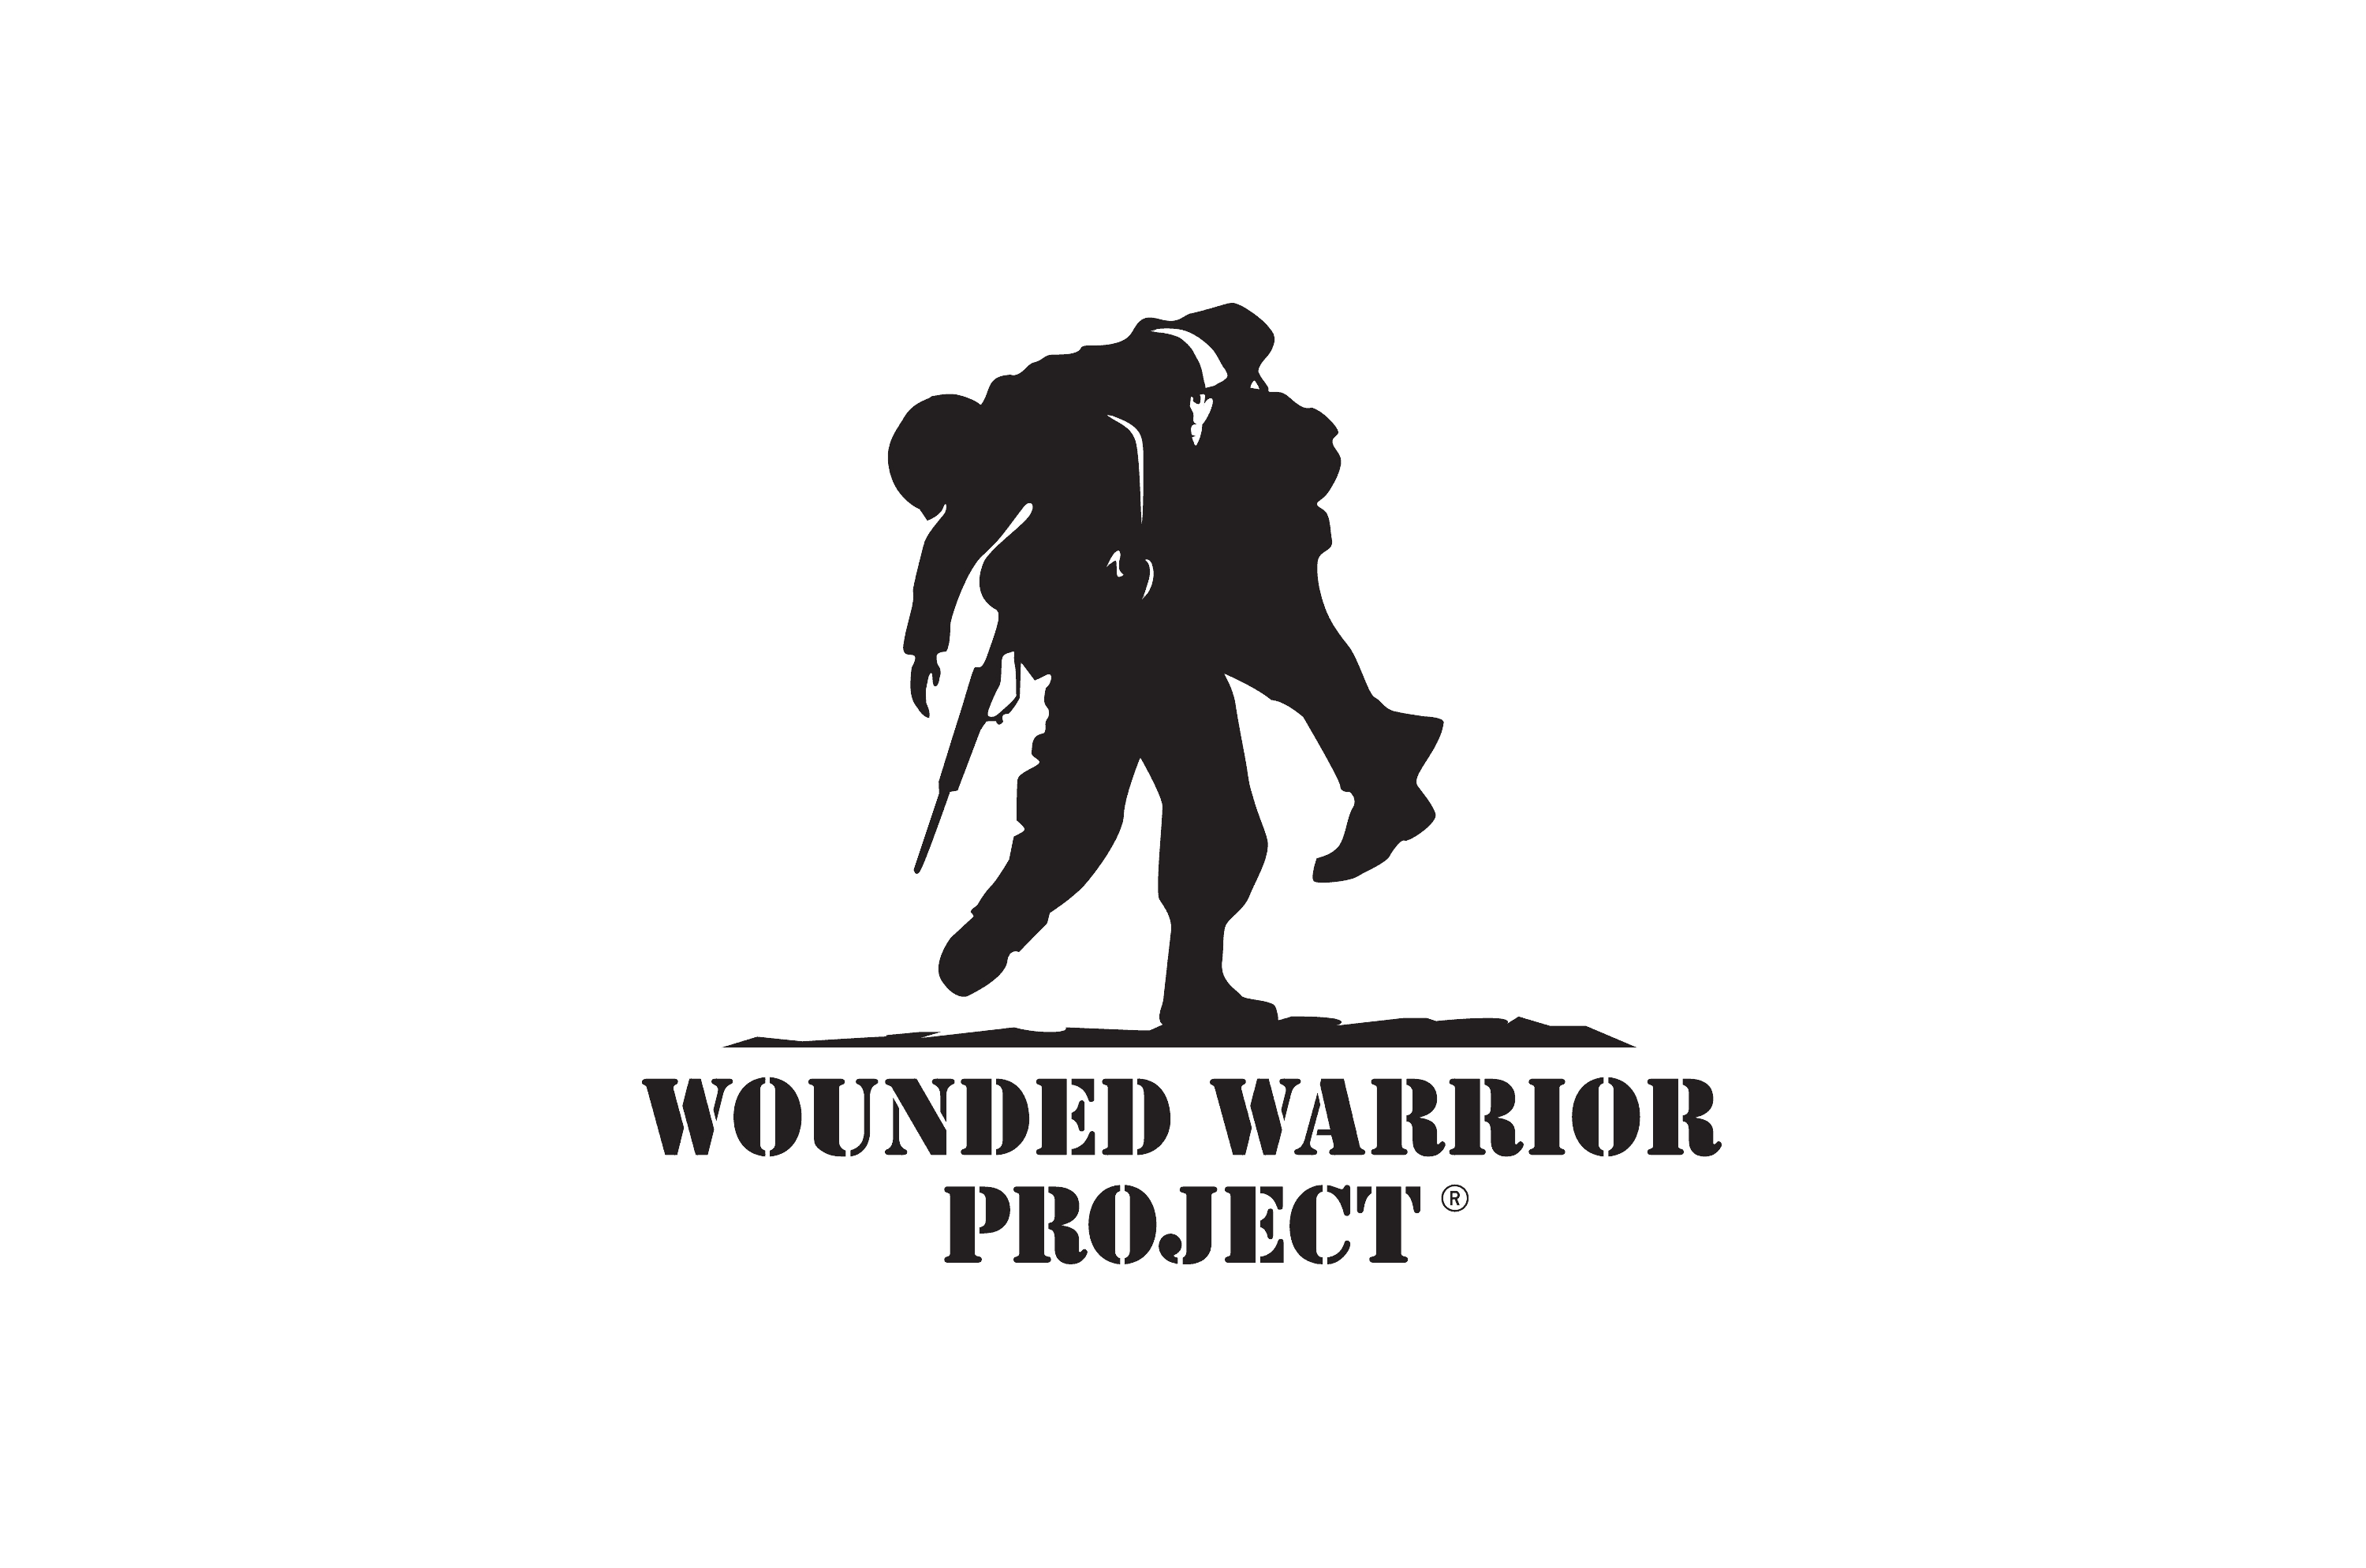 woundedwarriorproject.png?v=63.1.1